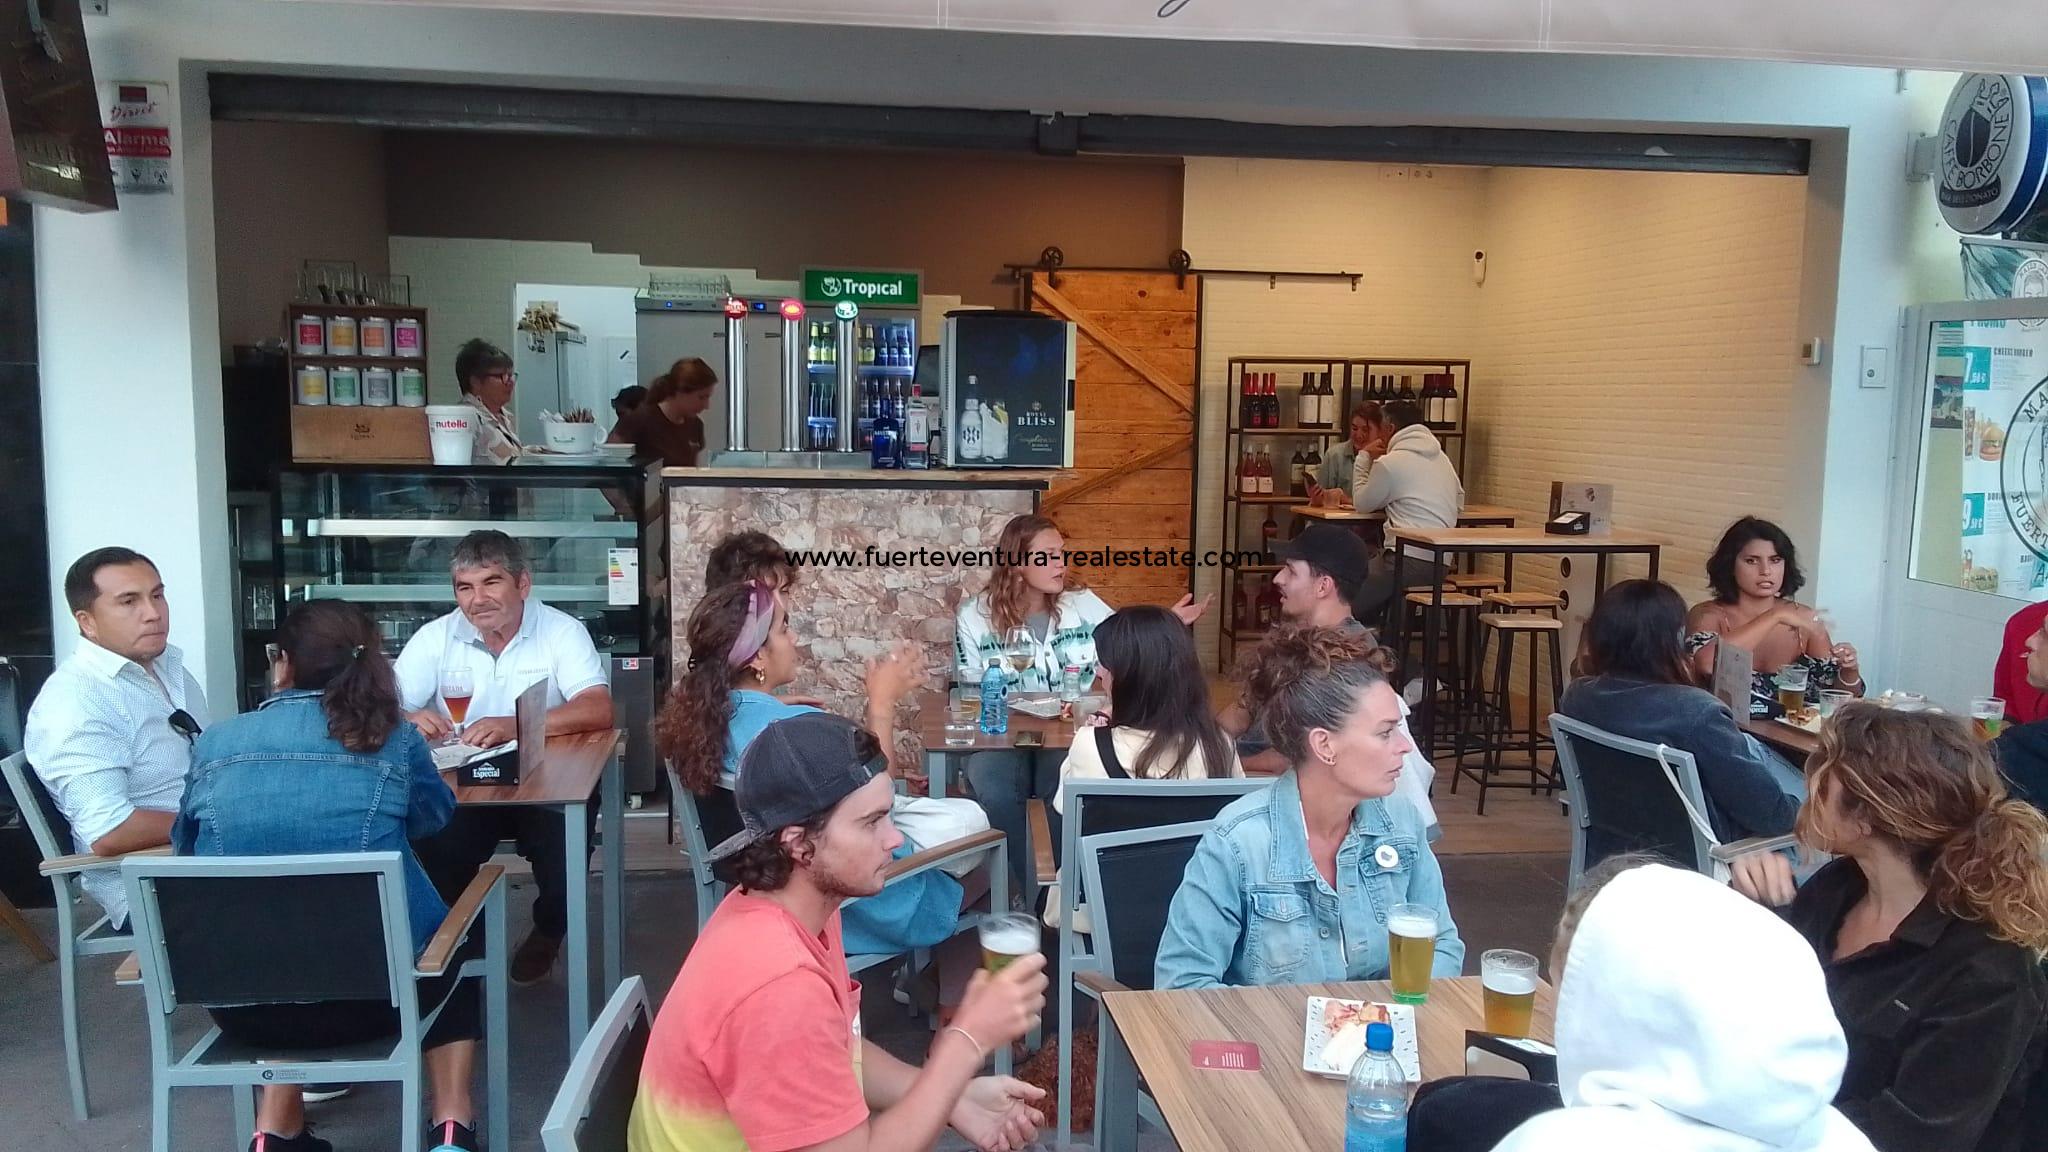 Een bar/cafetaria te huur in de beste commerciële buurt van Corralejo